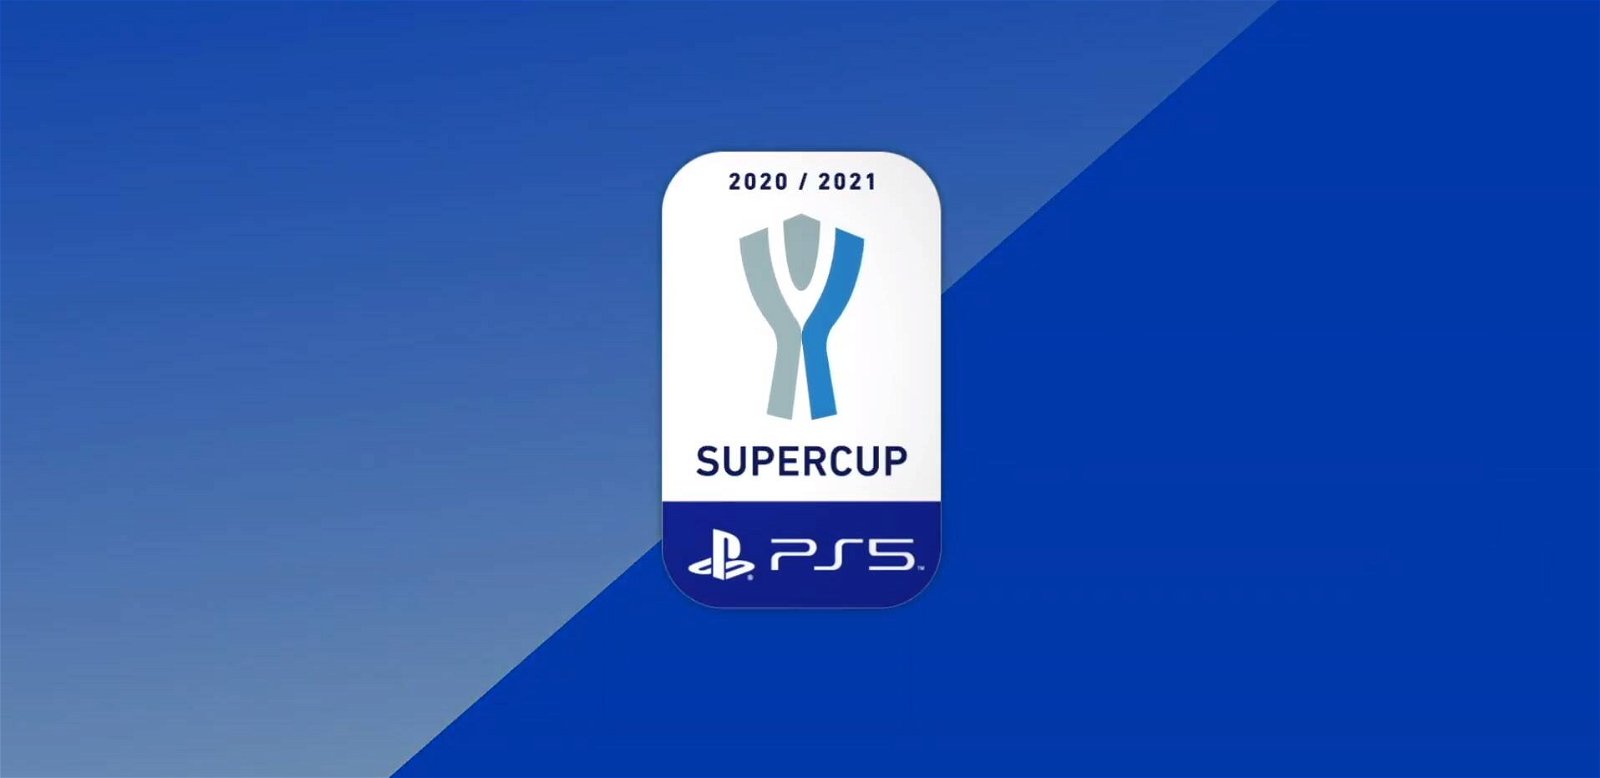 Immagine di PS5: potete vincere una console Sony con il contest Supercup